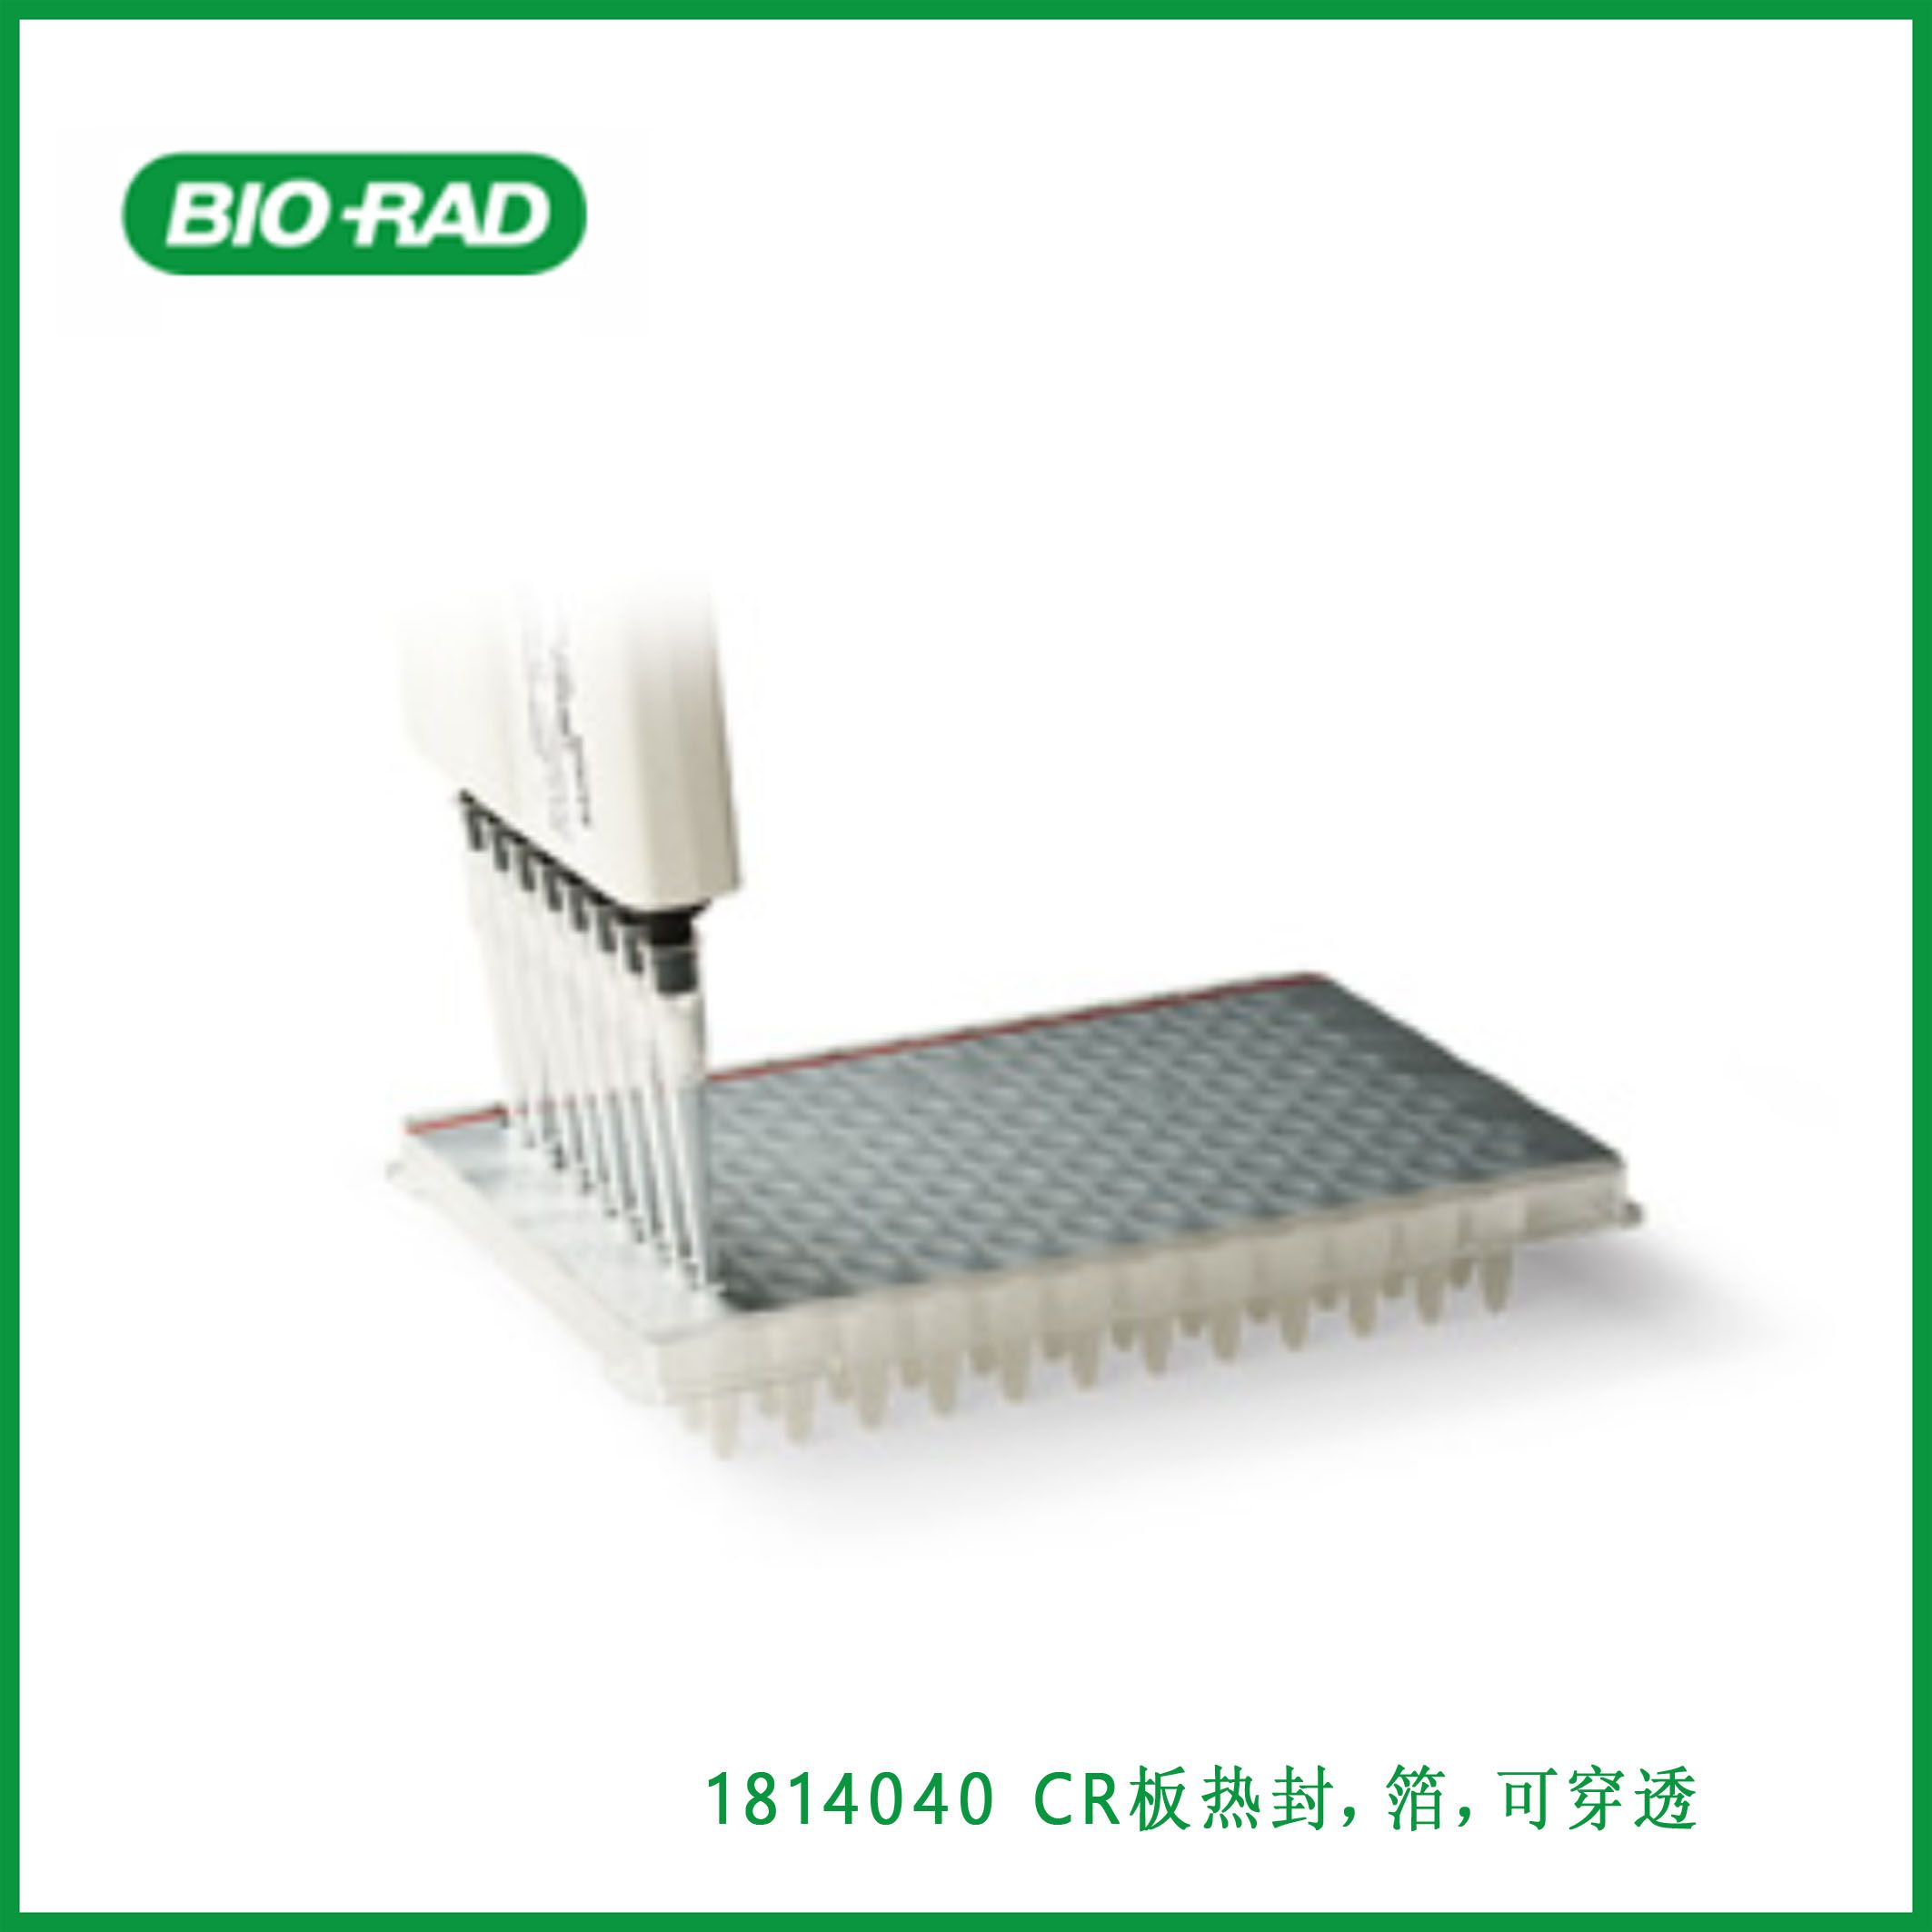 伯乐Bio-Rad1814040 PCR Plate Heat Seal, foil, pierceable，PCR板热封，箔，可穿透